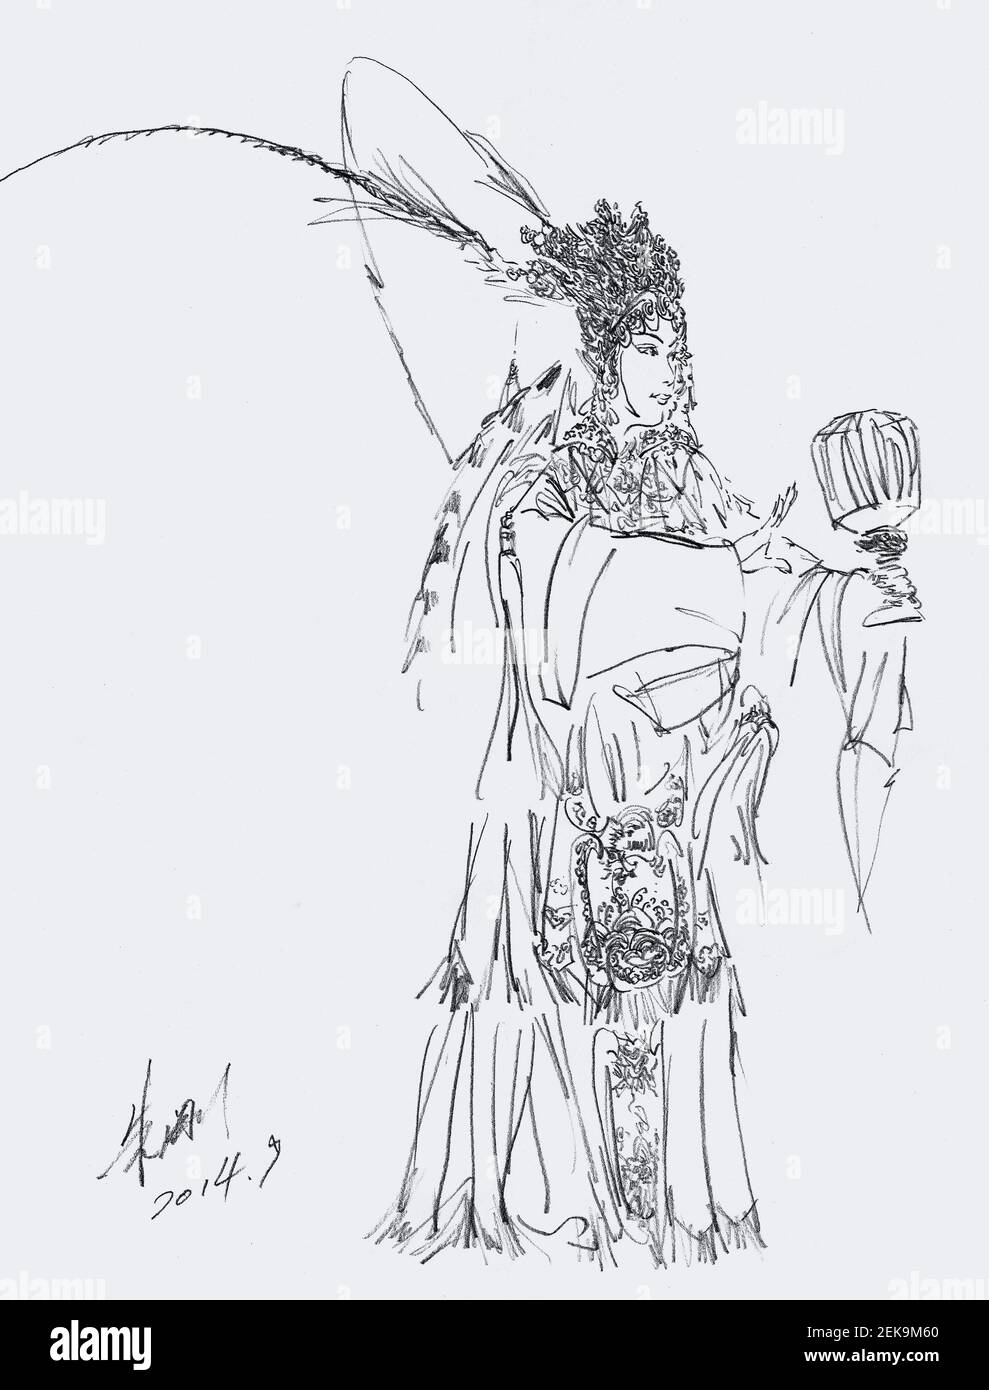 Foto sin fecha y sin ubicación: Pintura a lápiz, 'Regalo de una Espada en el Pabellón Baihua' por Zhu Gang, un artista moderno y contemporáneo asiático chino de Shanghai. (Foto de Zhu Gang/ChinaImages/Sipa USA) Foto de stock